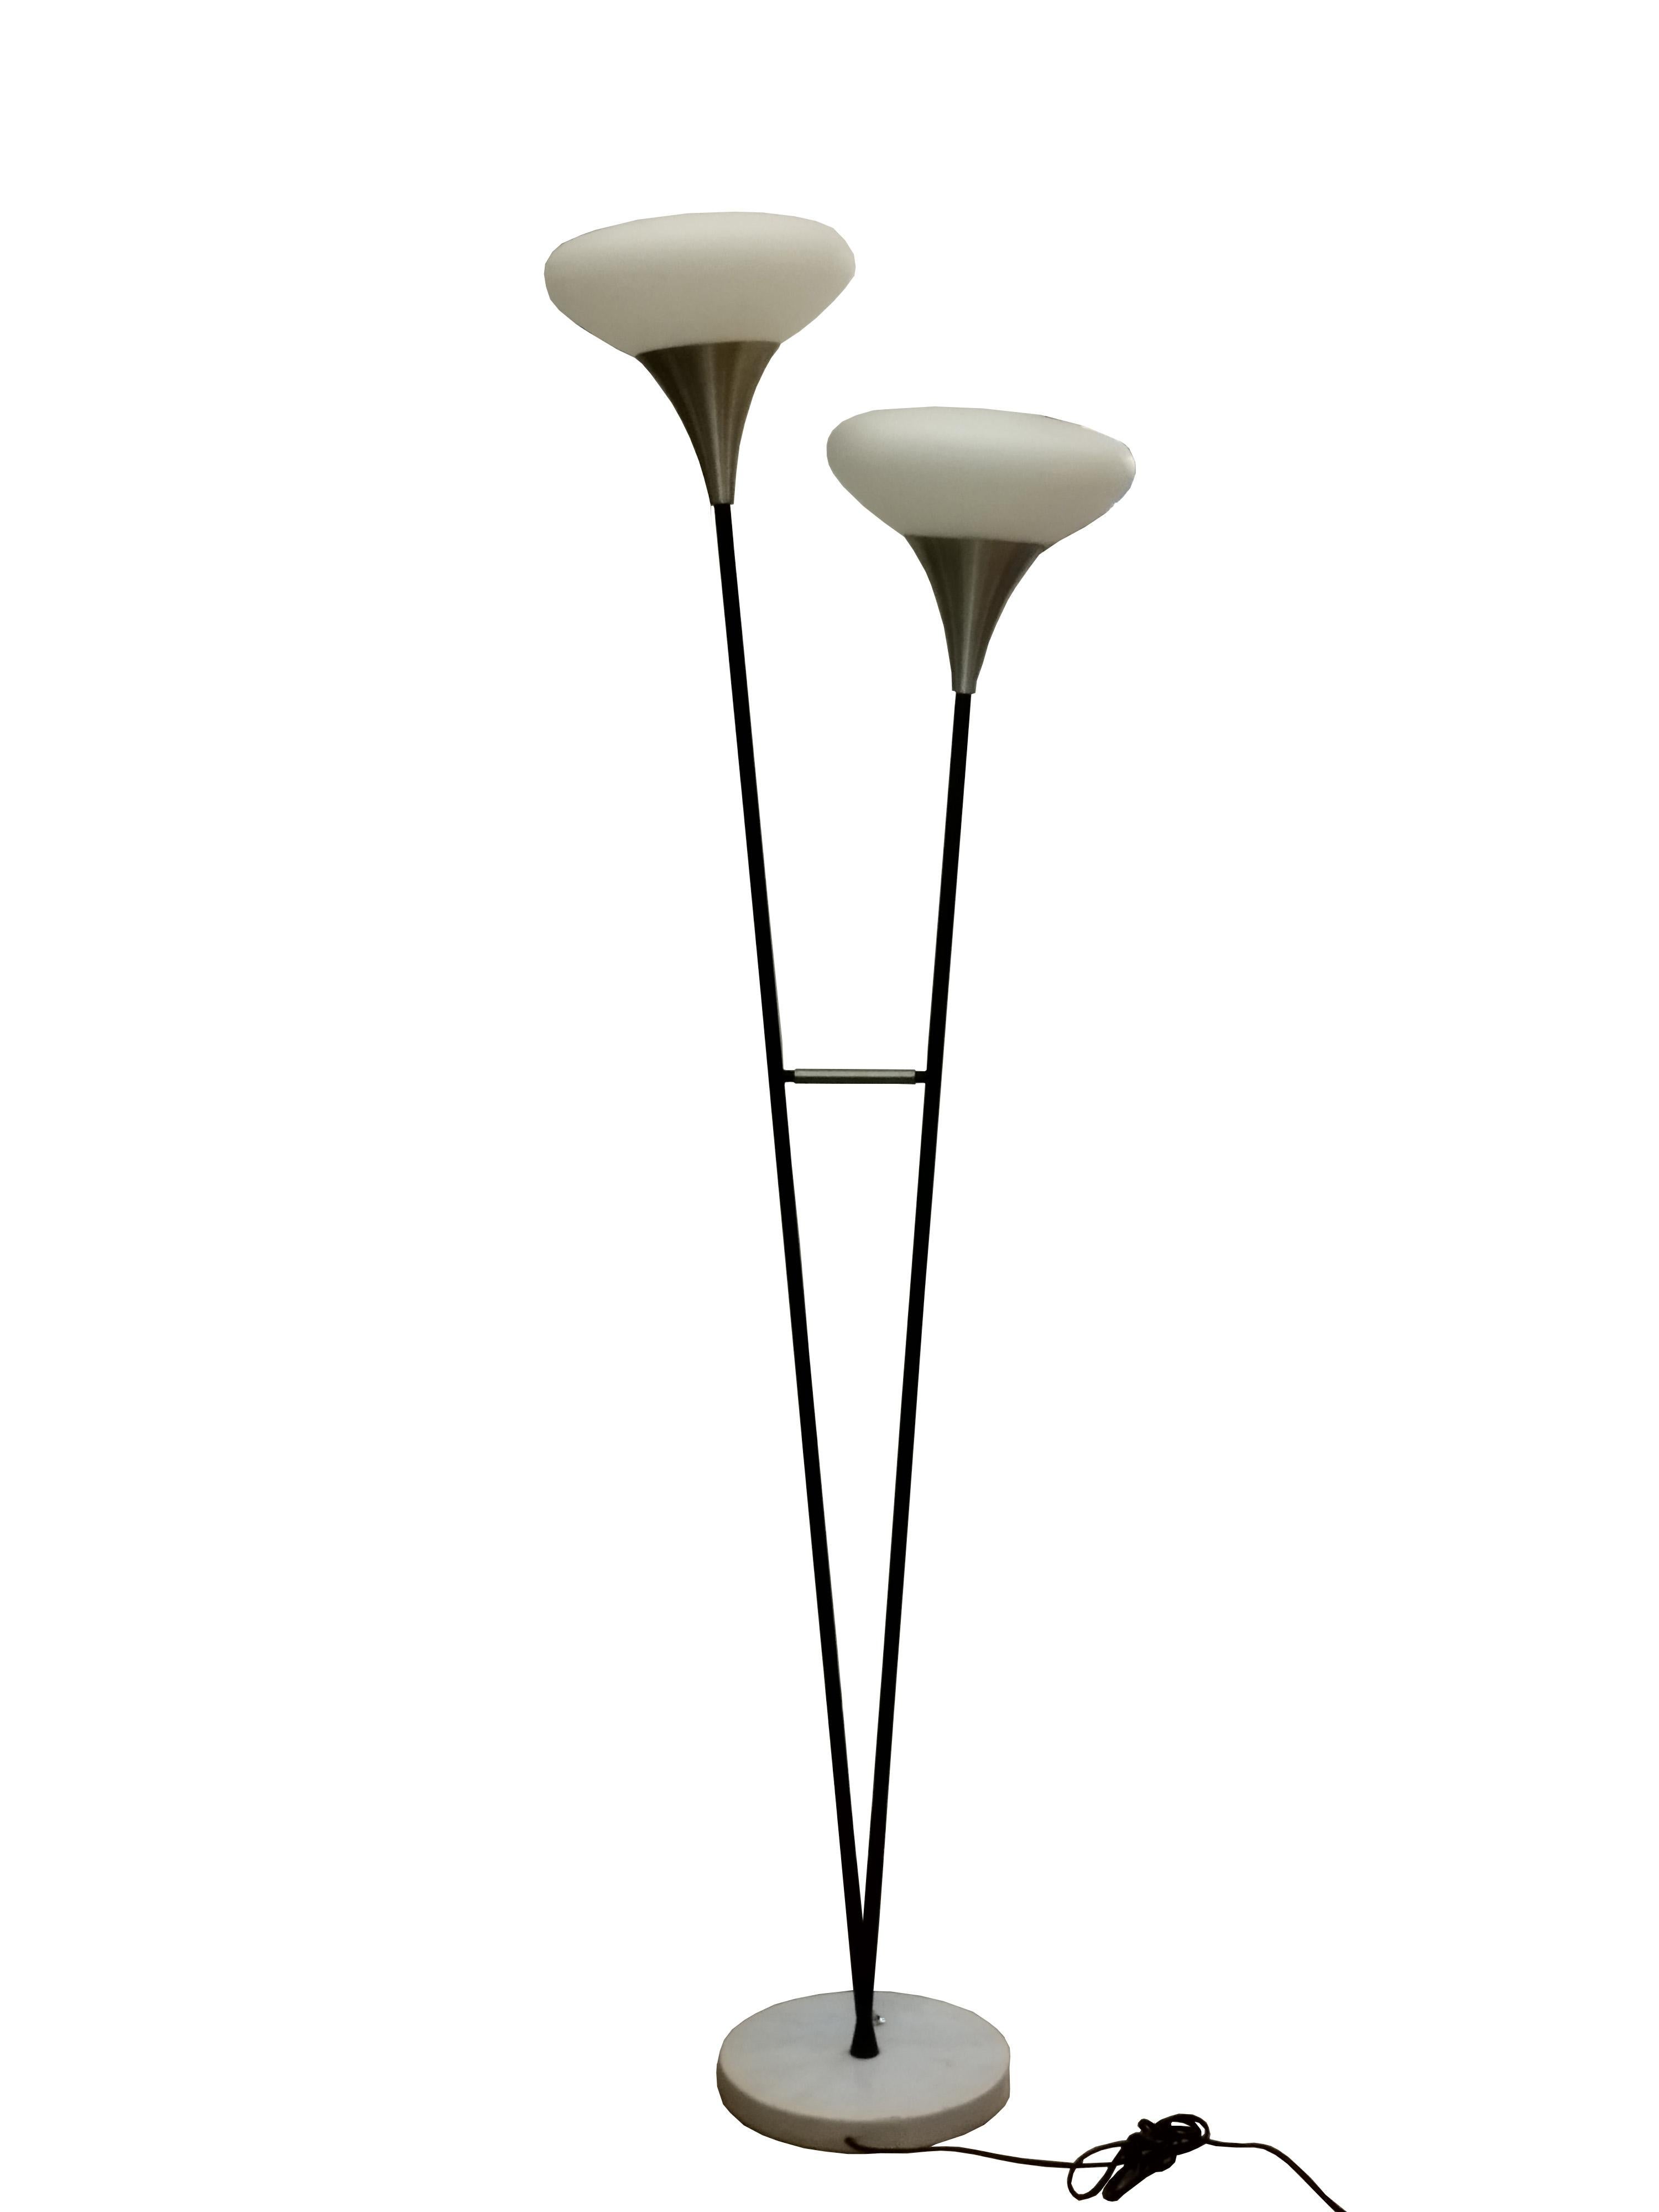 Lampadaire italien Produit par Stilnovo dans les années 1950.
Comprenant deux branches verticales émaillées noires, chacune avec un abat-jour en verre opalin sablé blanc sur une base en marbre.
